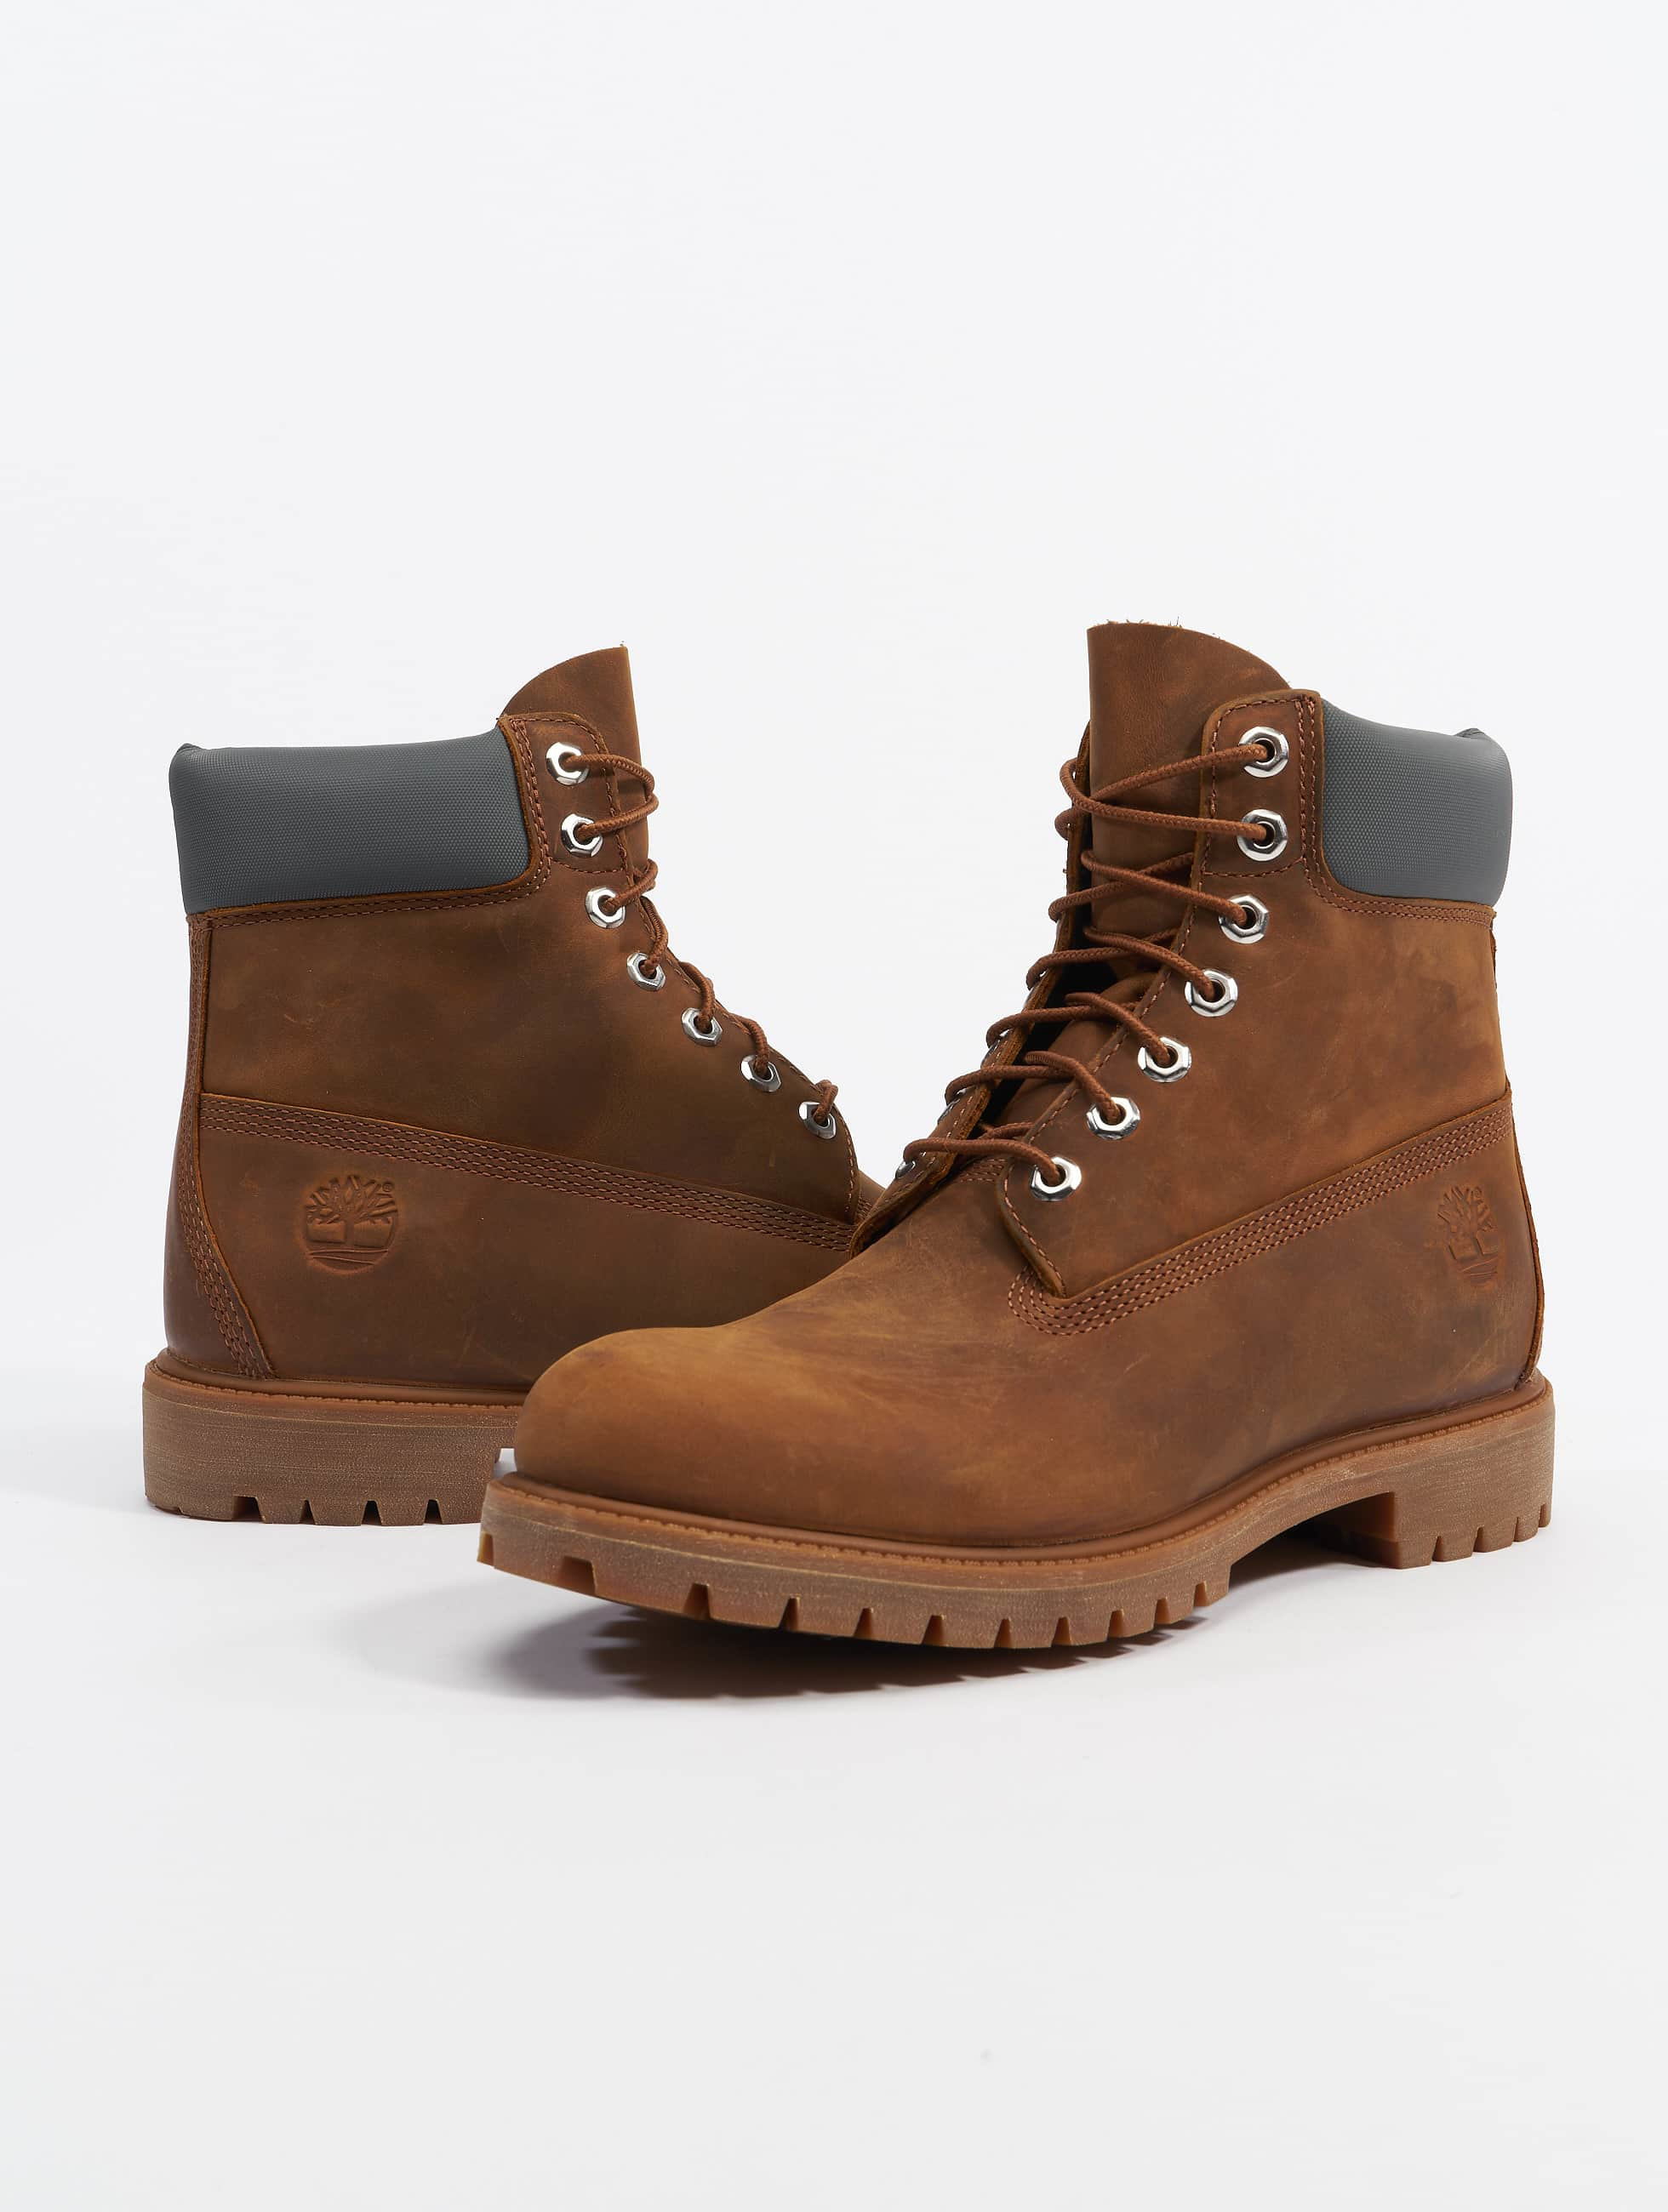 Zapato / Boots 6 Inch Premium en marrón 973765